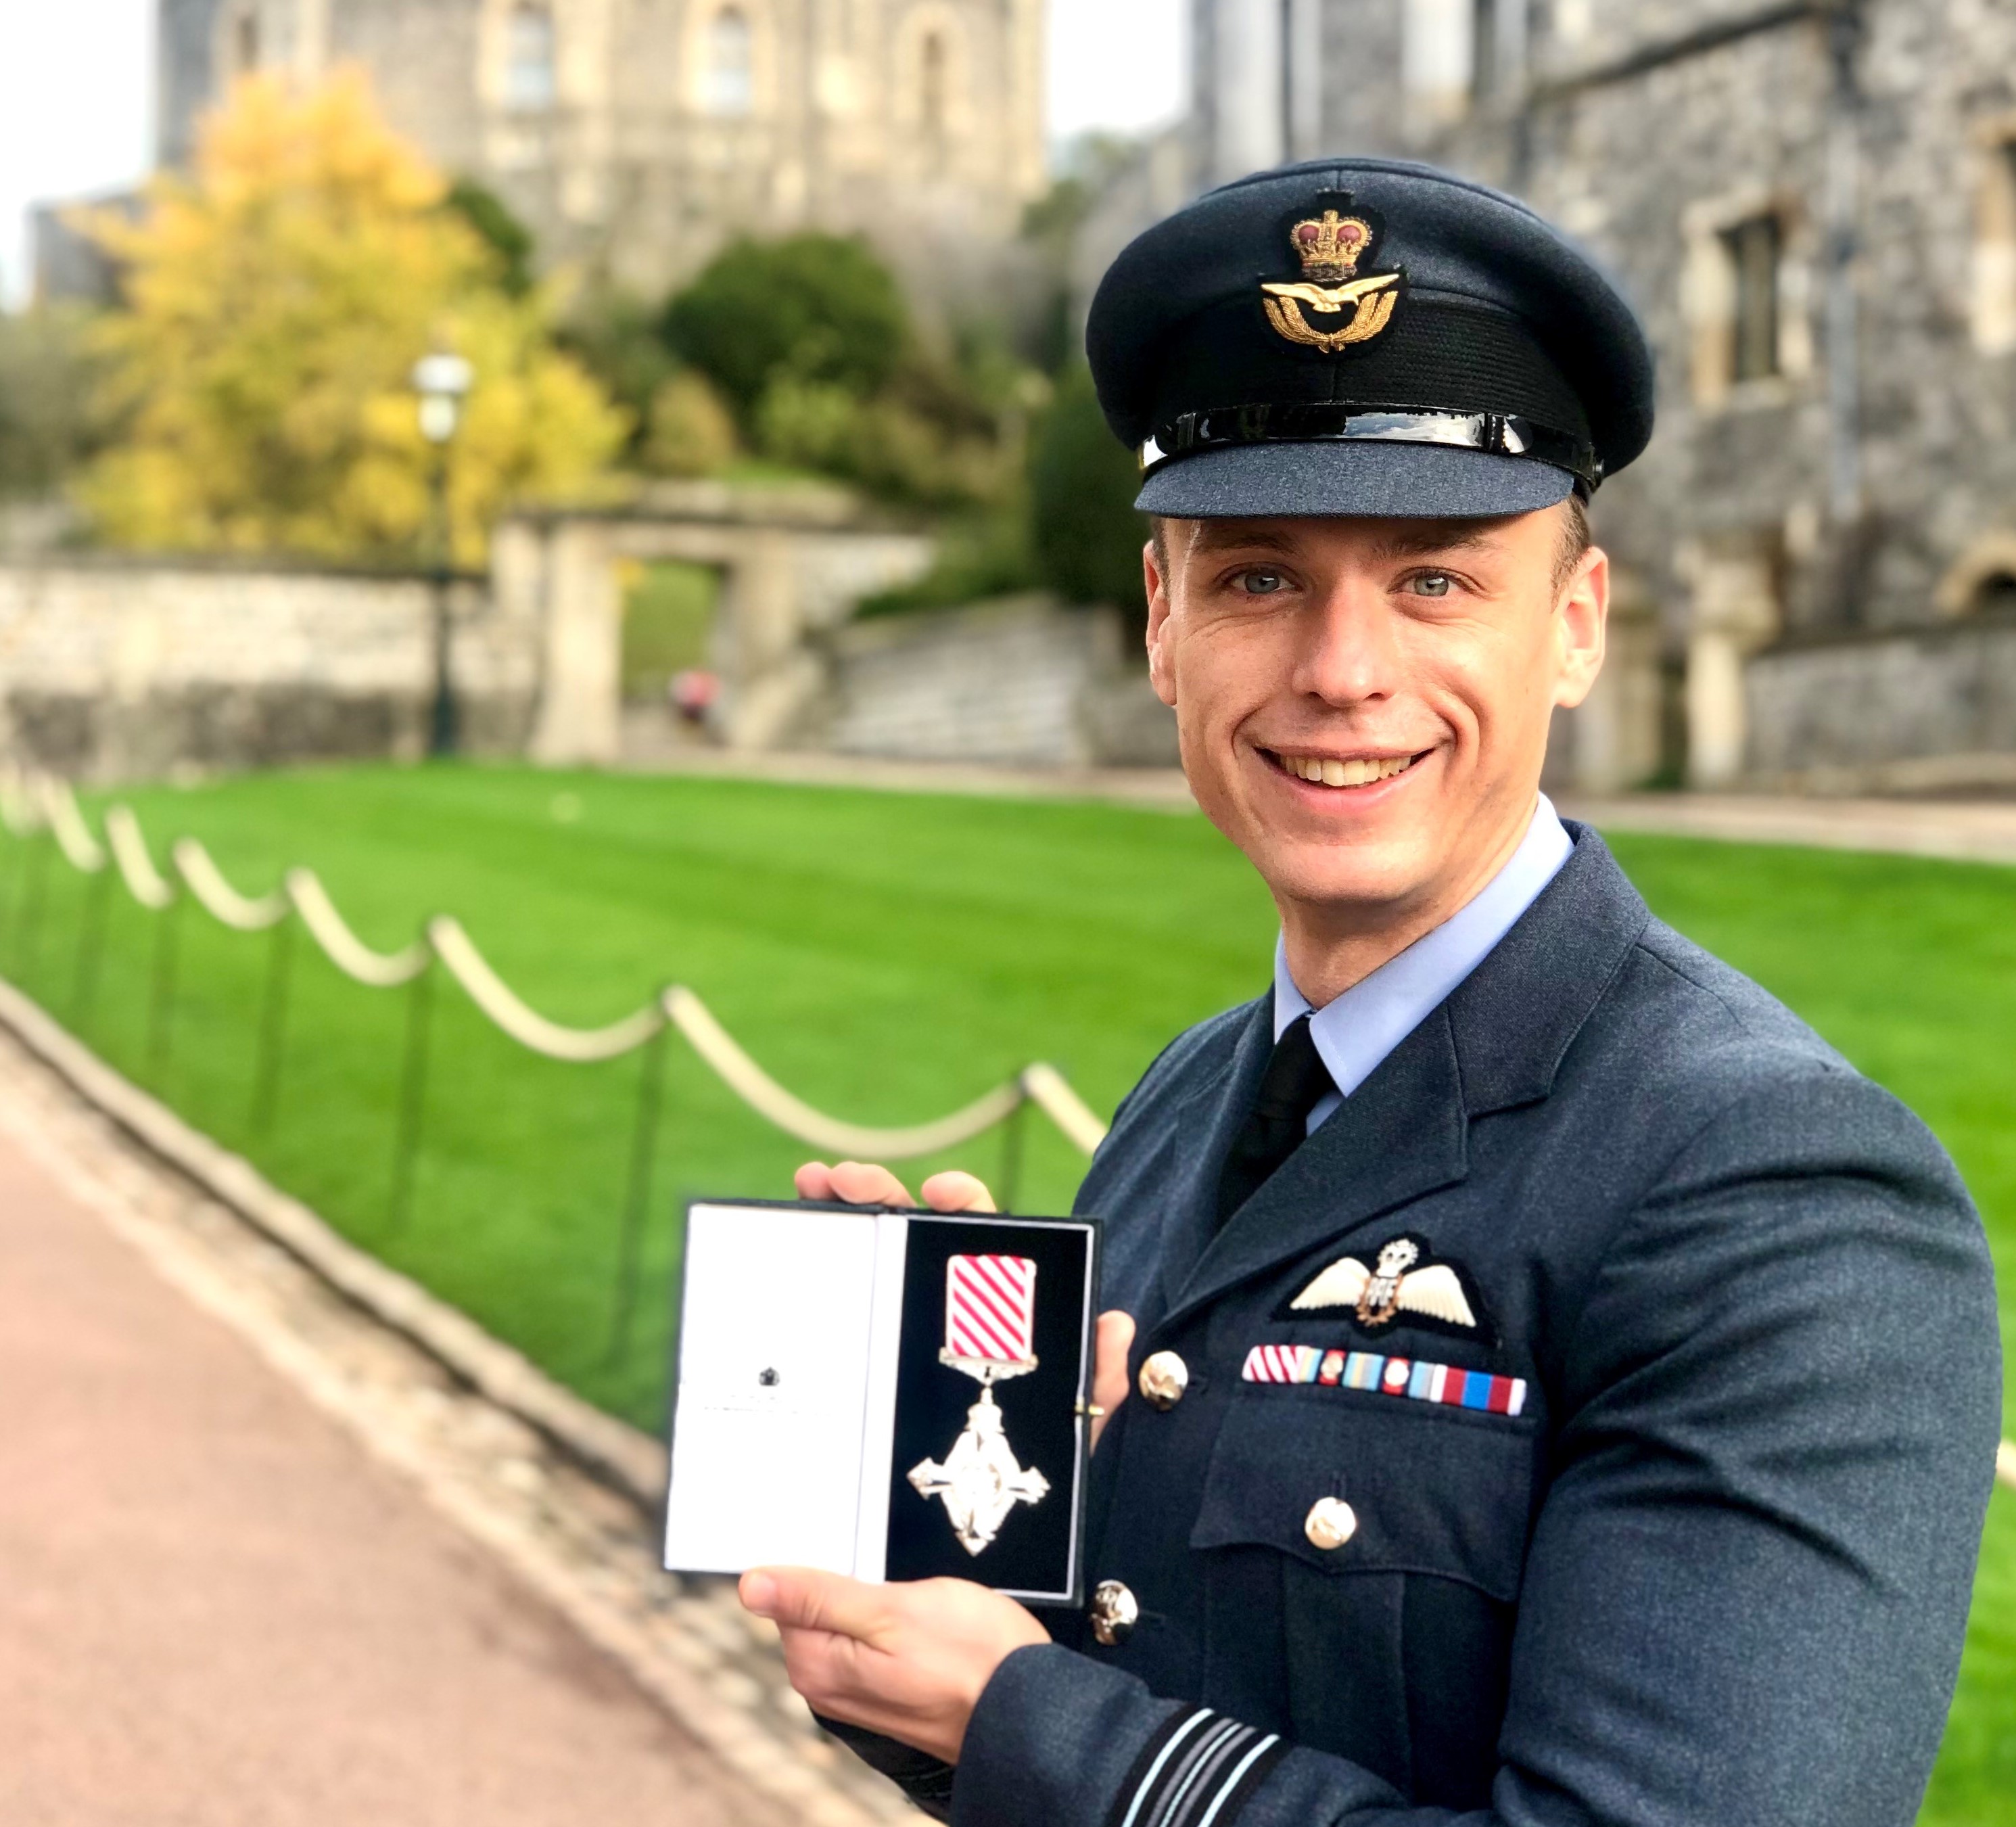 Image shows RAF aviator holding medal outside Windsor Castle.